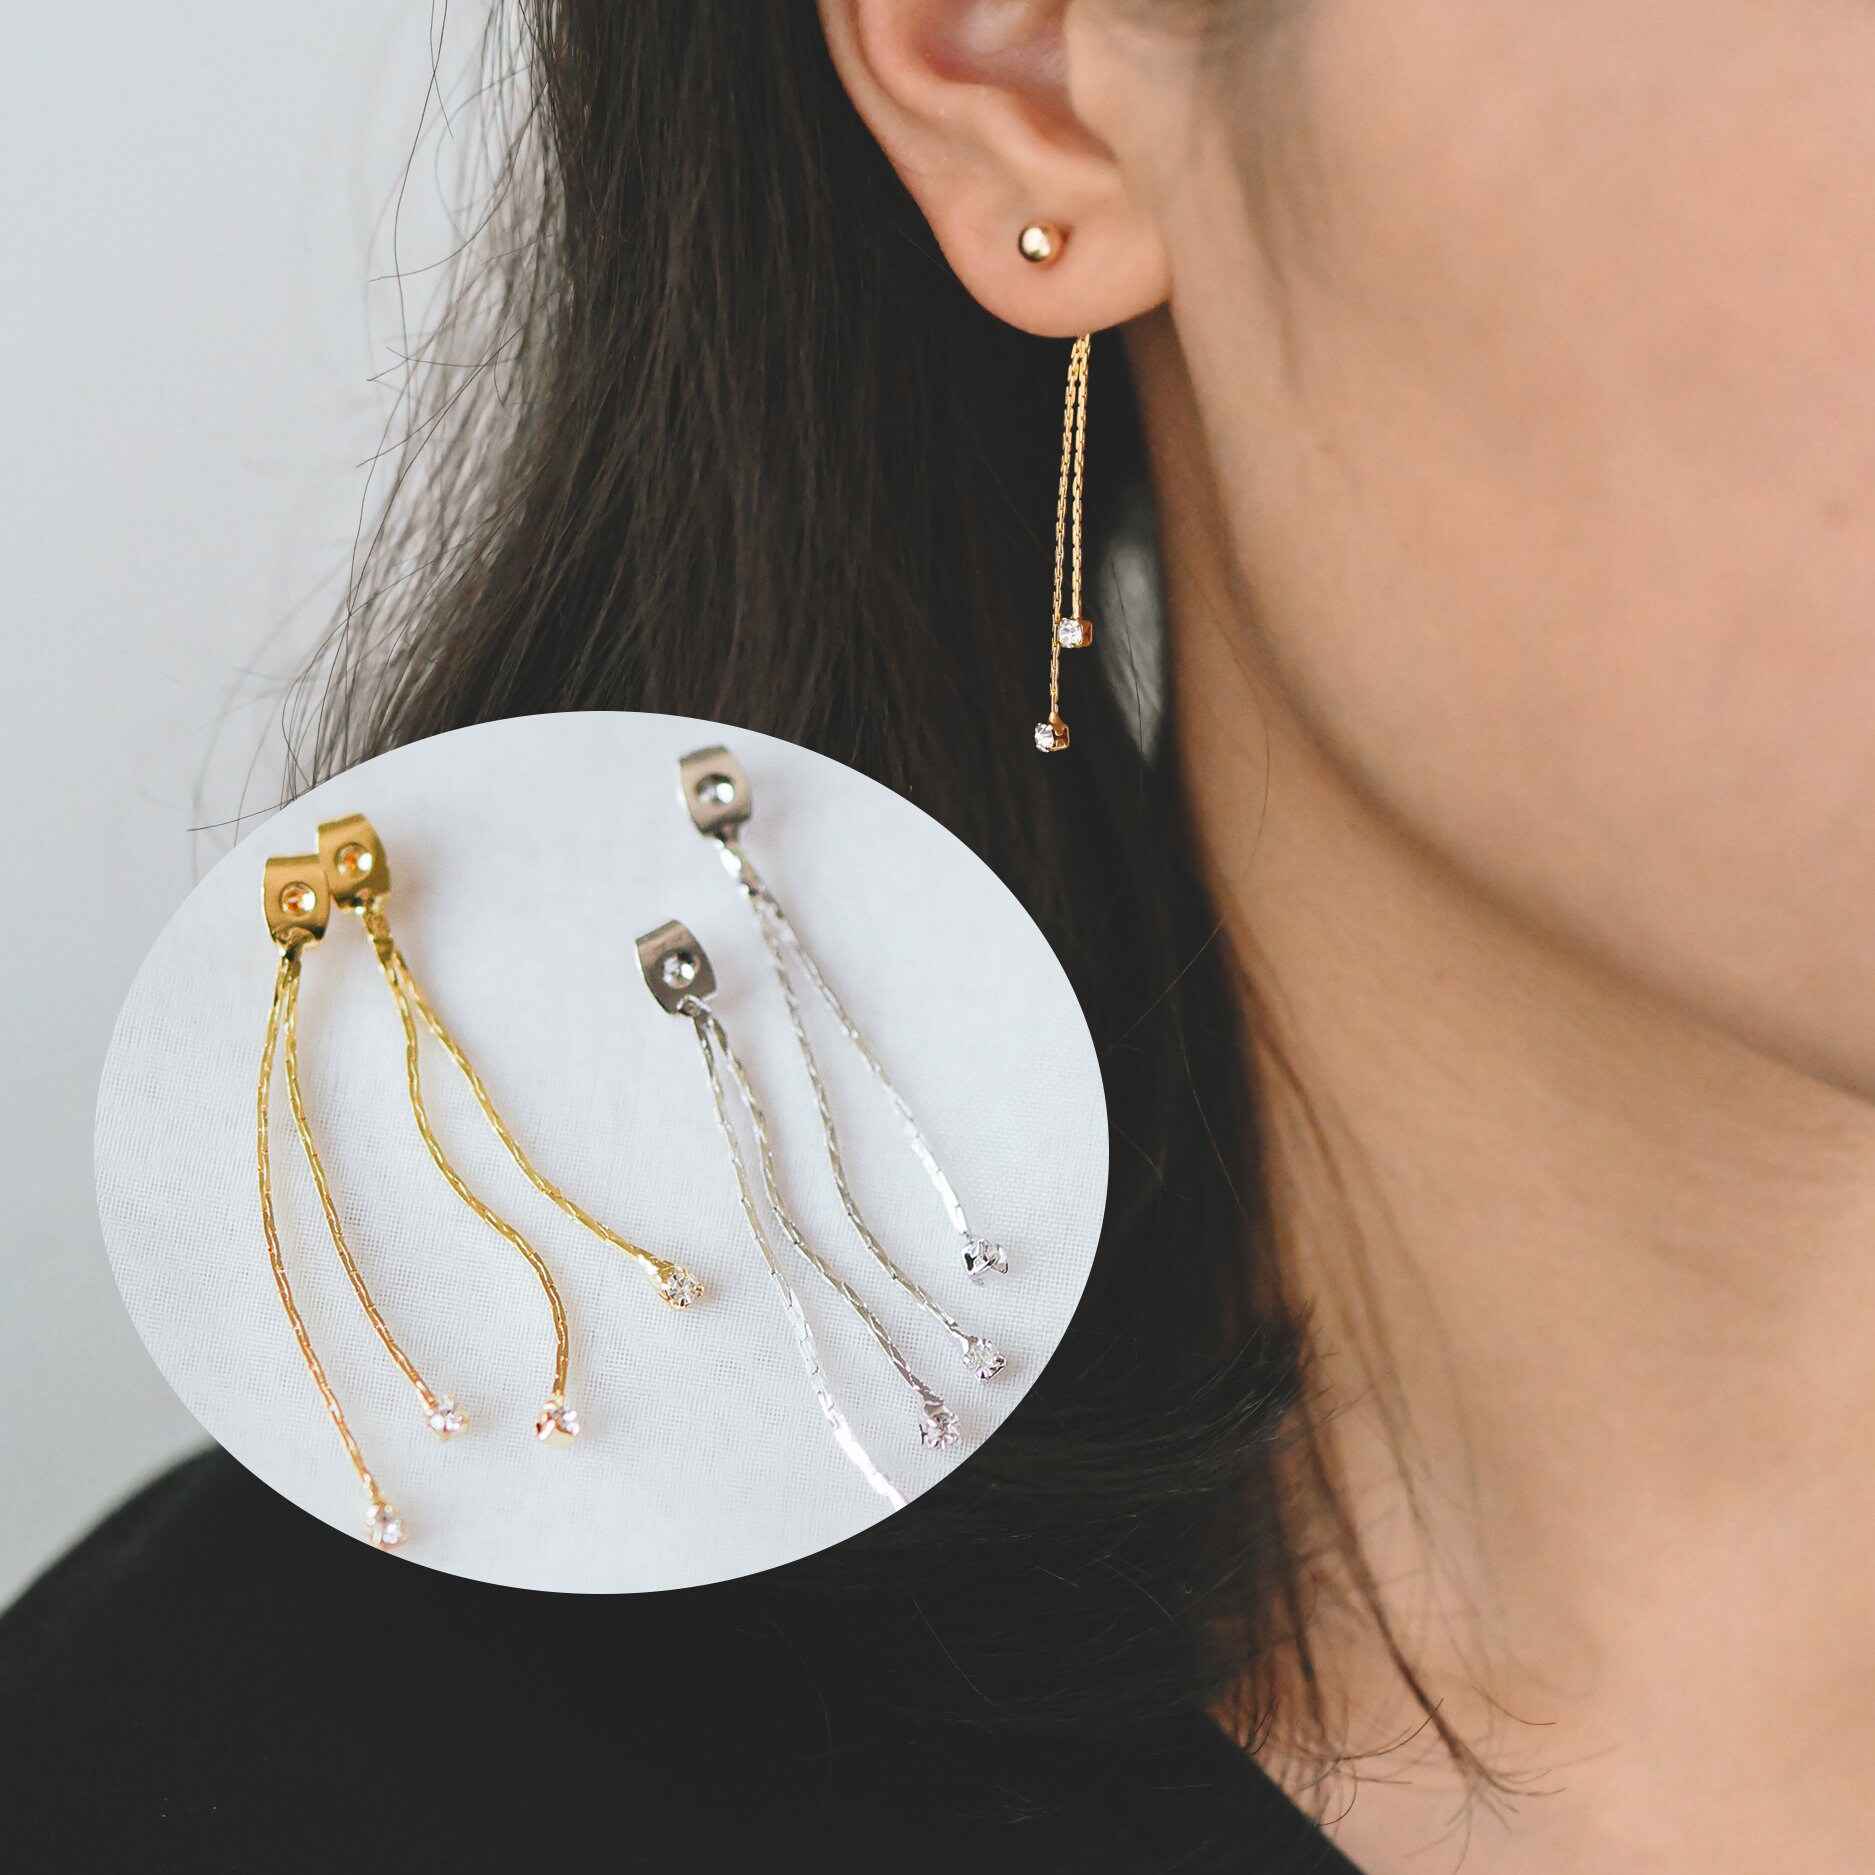  BEADNOVA 18K White Gold Silicone Earring Backs for